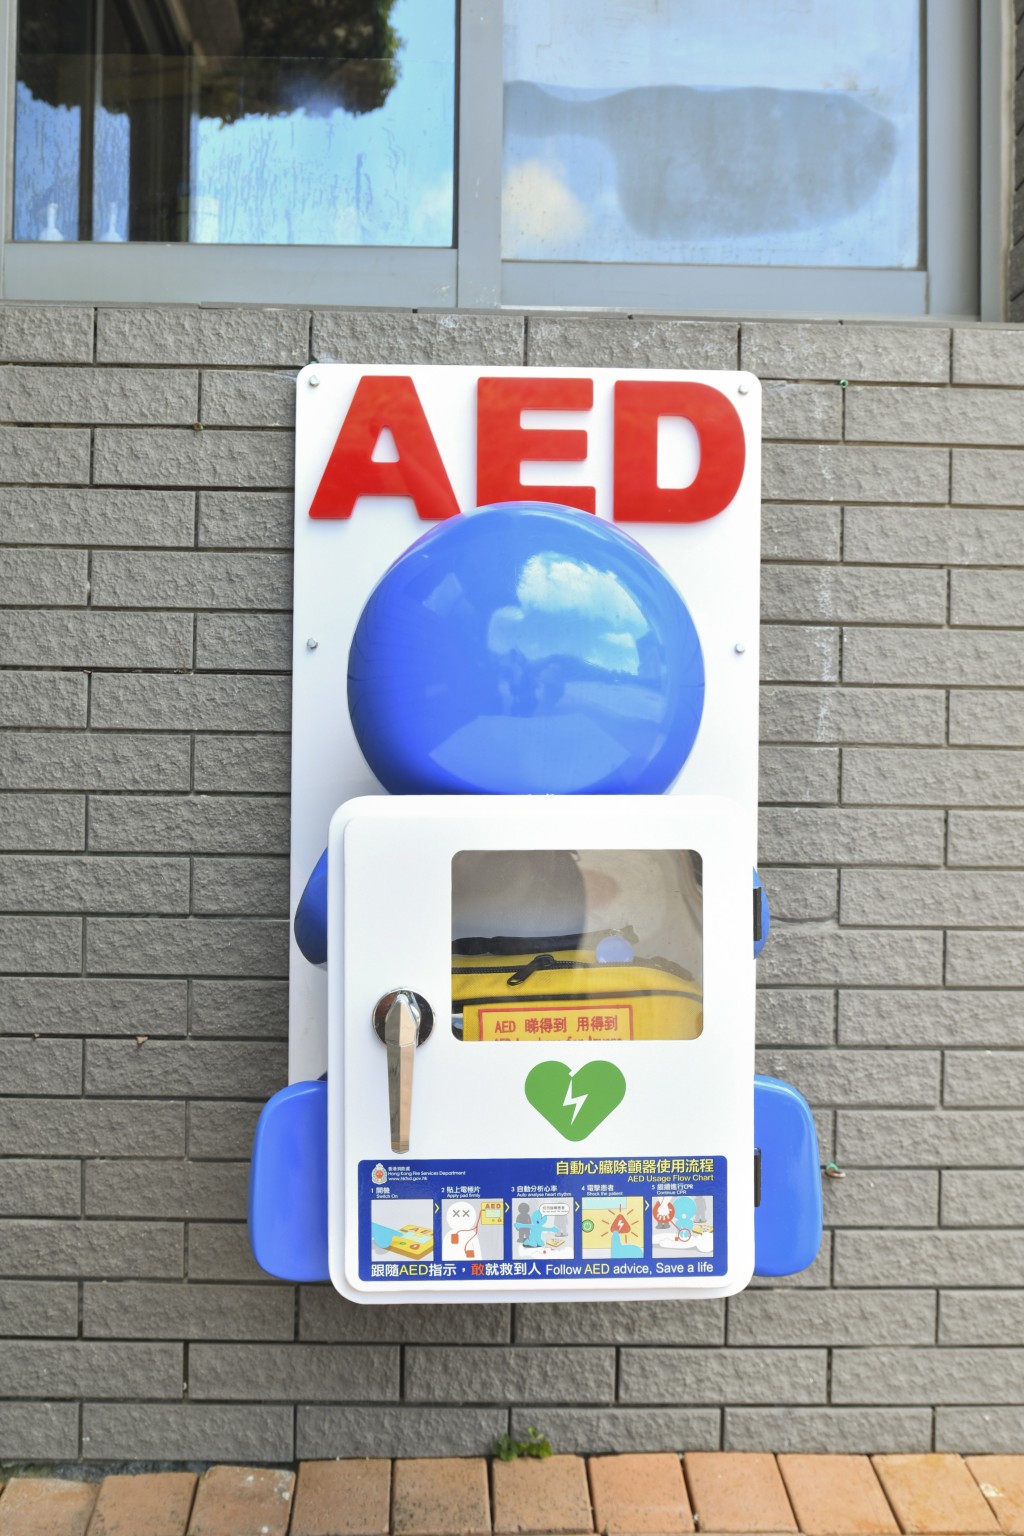 消防處成立「救心同仁」聯盟，推廣心肺復甦法（CPR）及自動心臟除顫器（AED）的普及應用。資料圖片